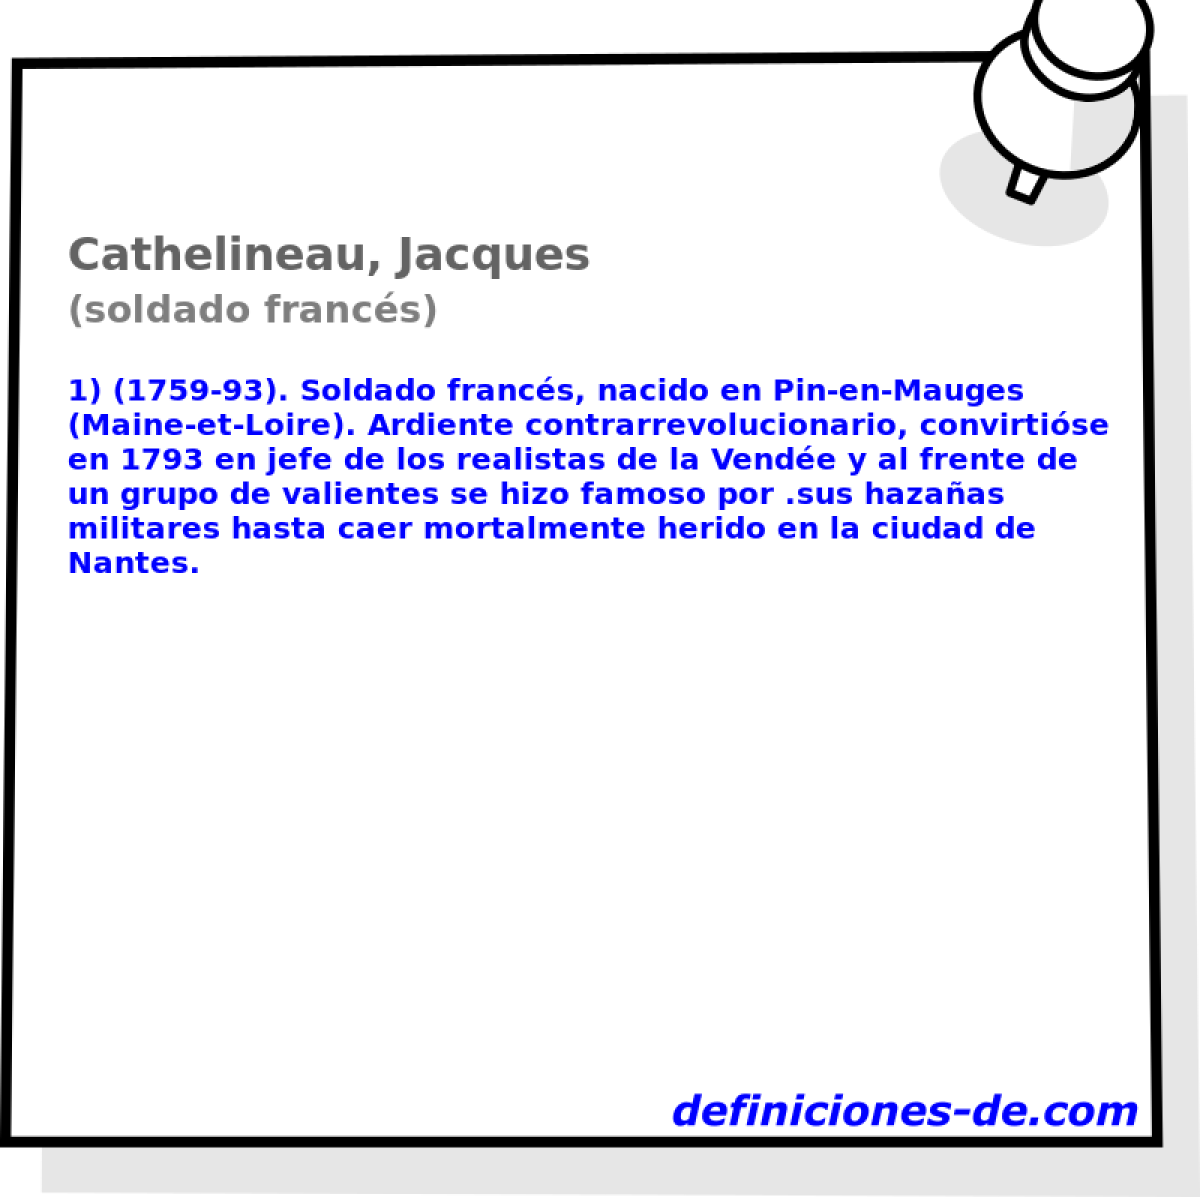 Cathelineau, Jacques (soldado francs)